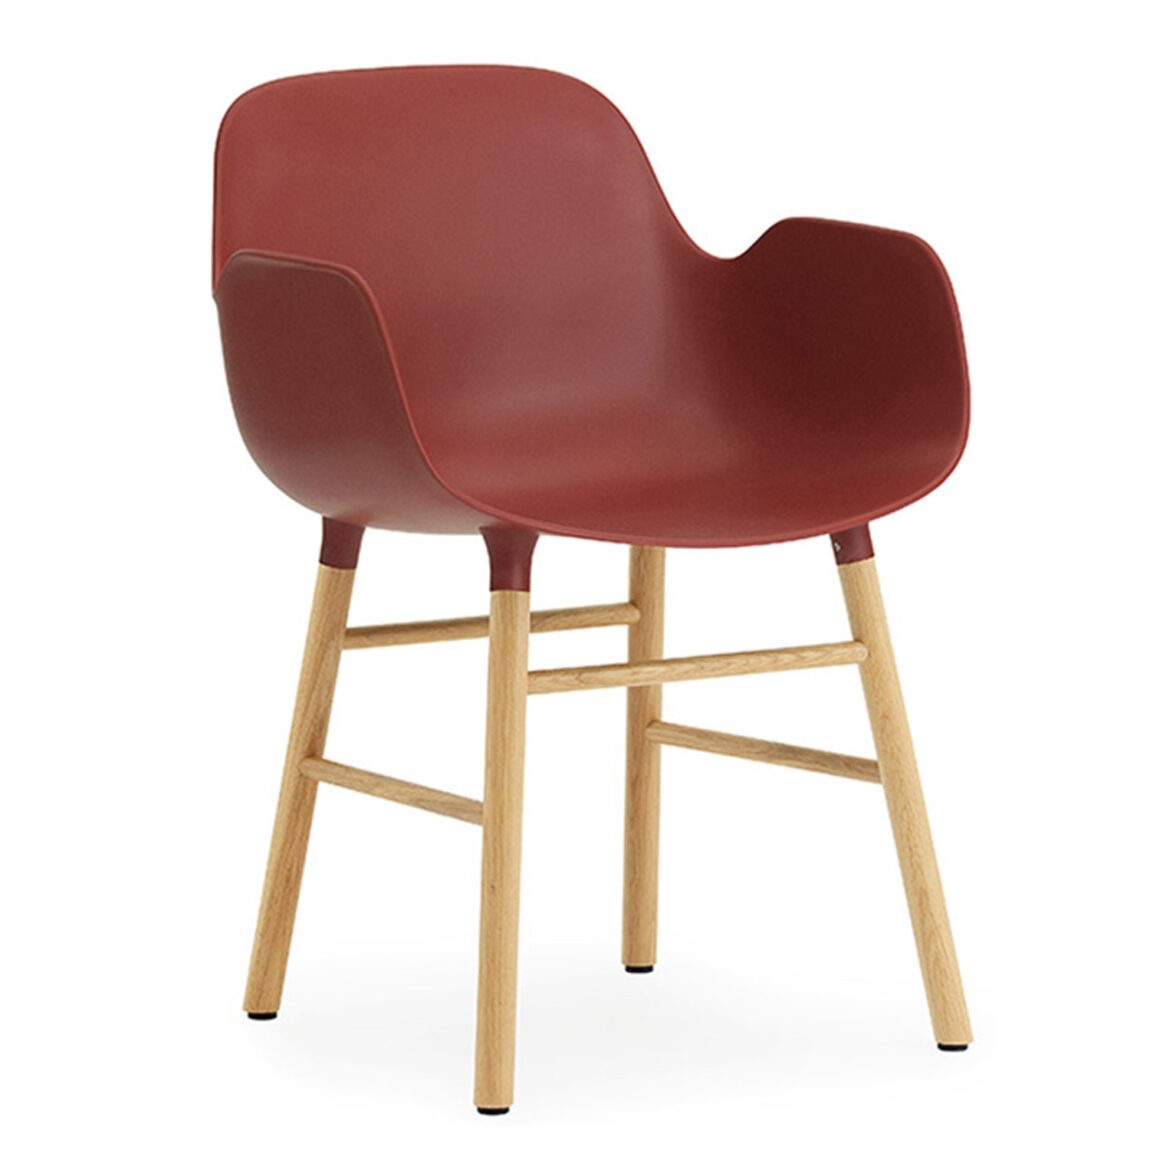 Výprodej Normann Copenhagen designové židle Form